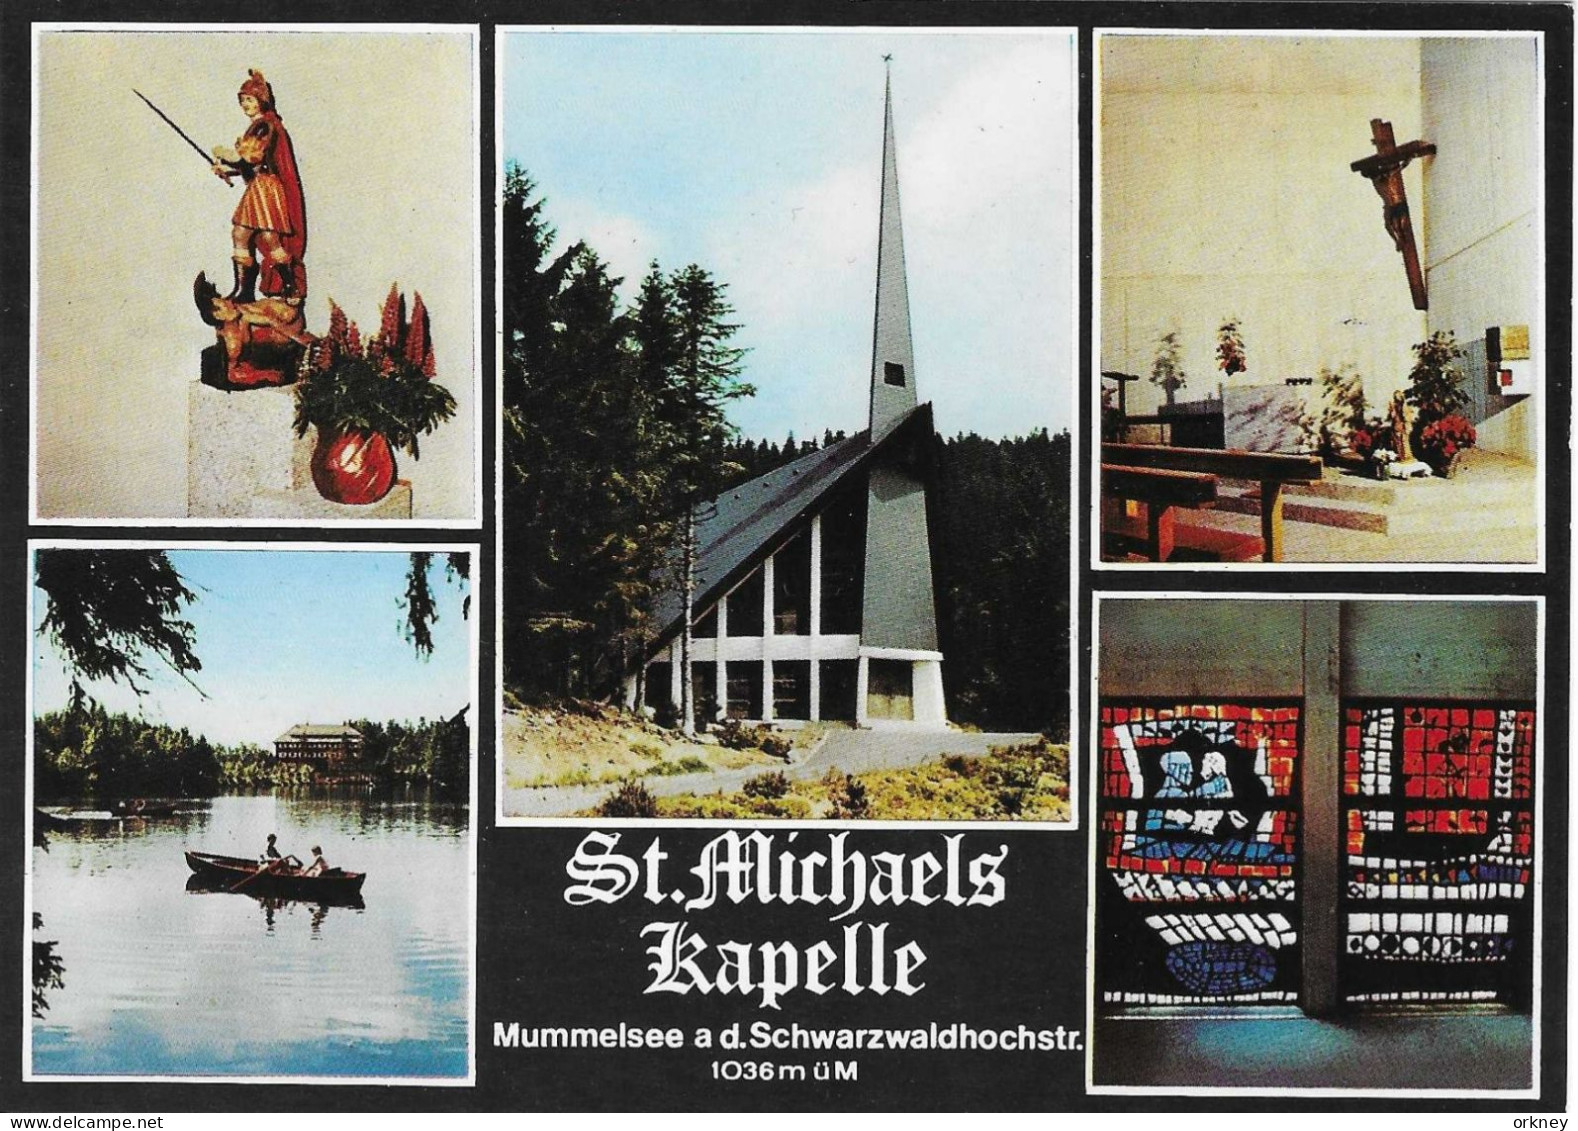 Duitsland 97/89 Mummelsee St. Michaelkapelle - Muellheim